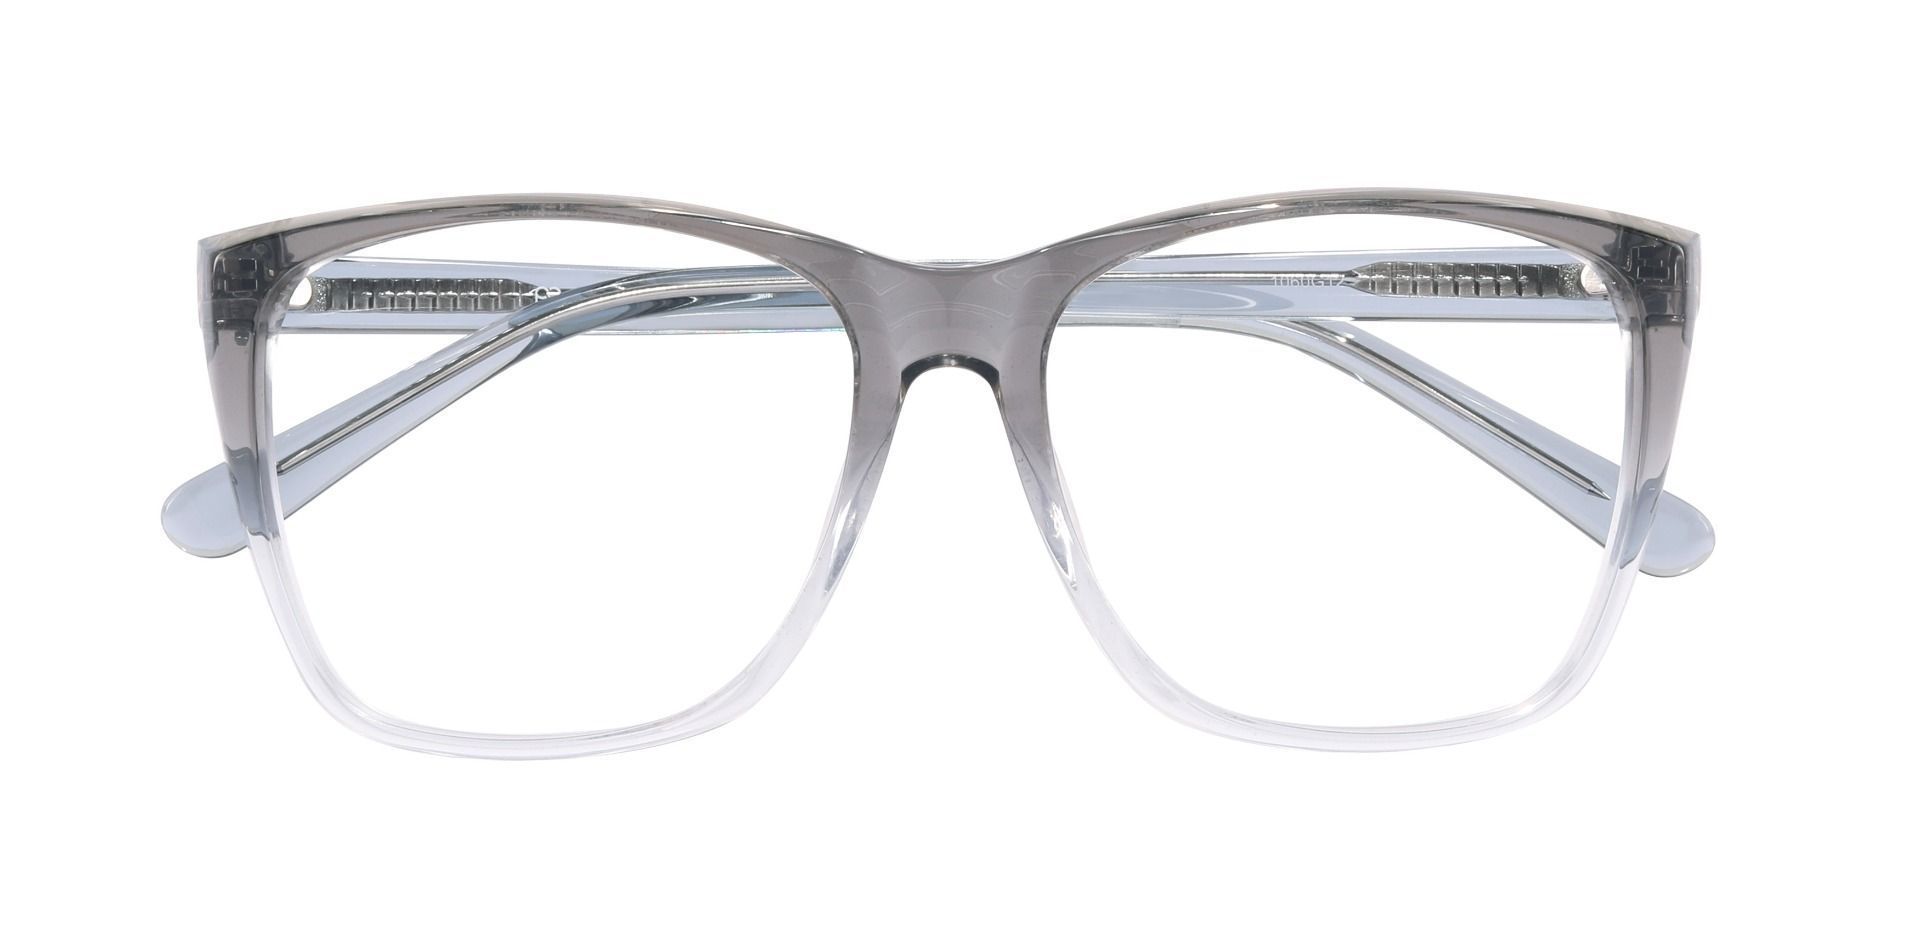 Loni Square Prescription Glasses - Gray